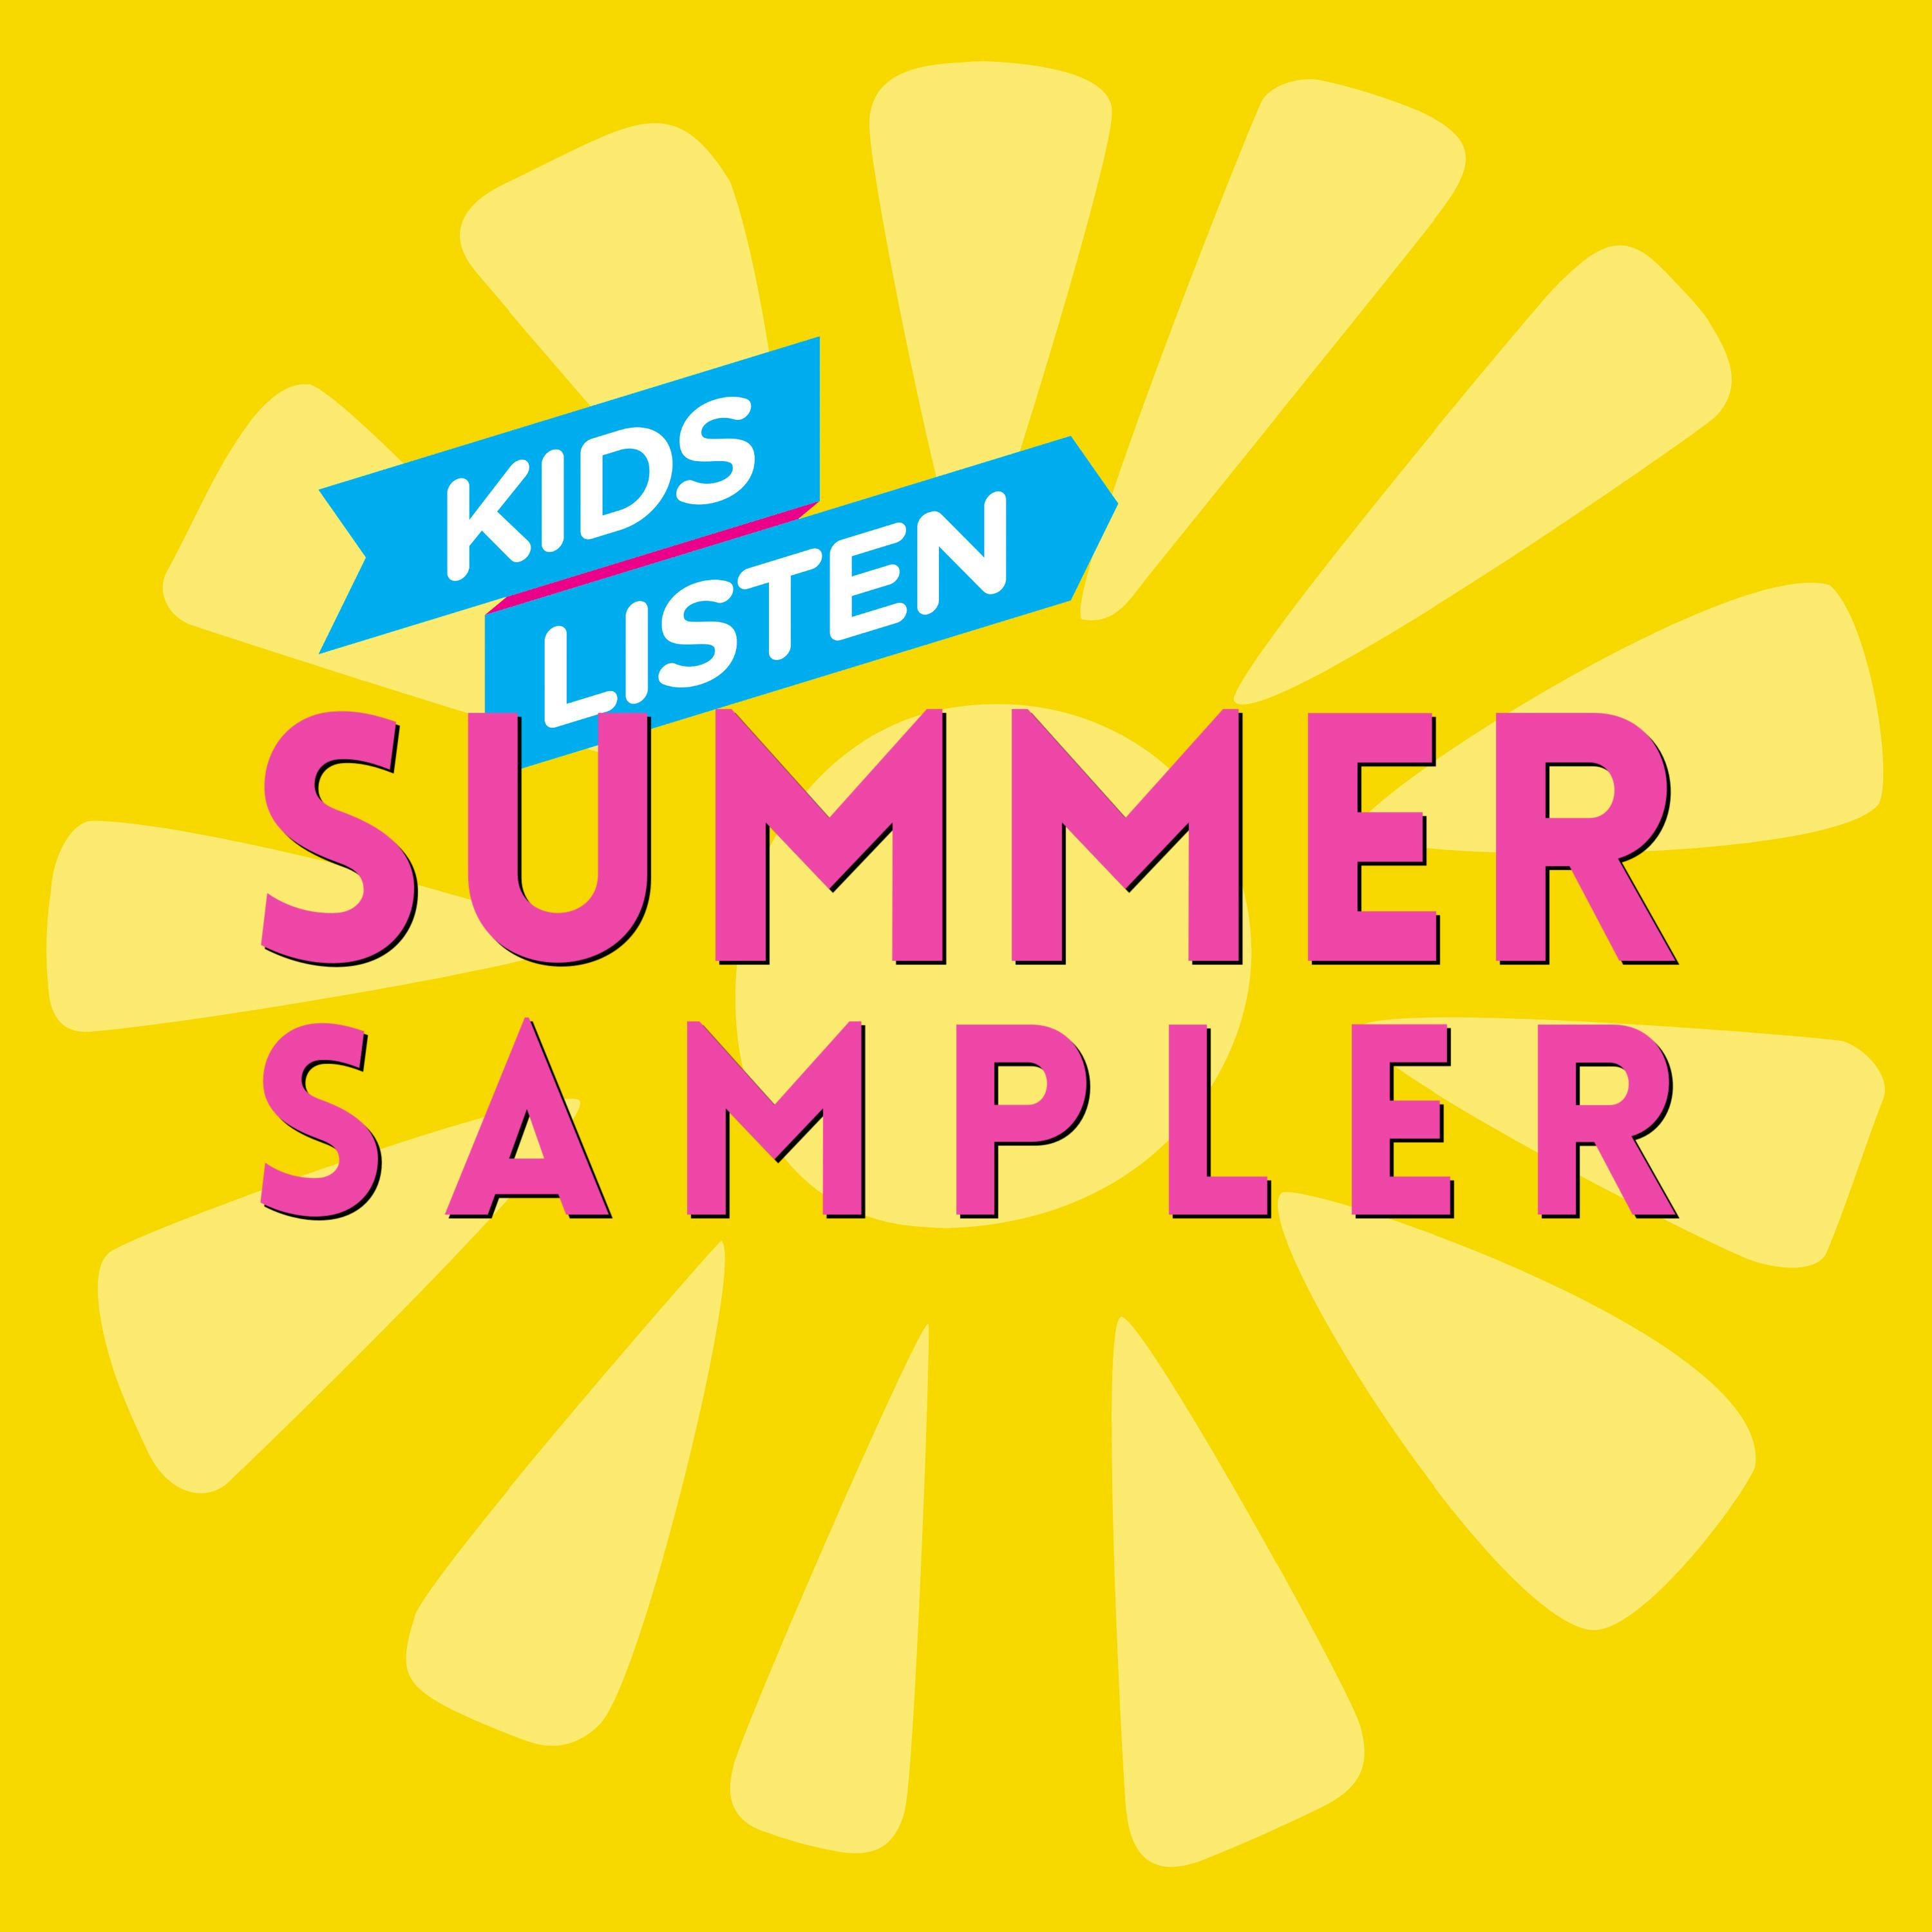 The KIDS LISTEN Summer Sampler